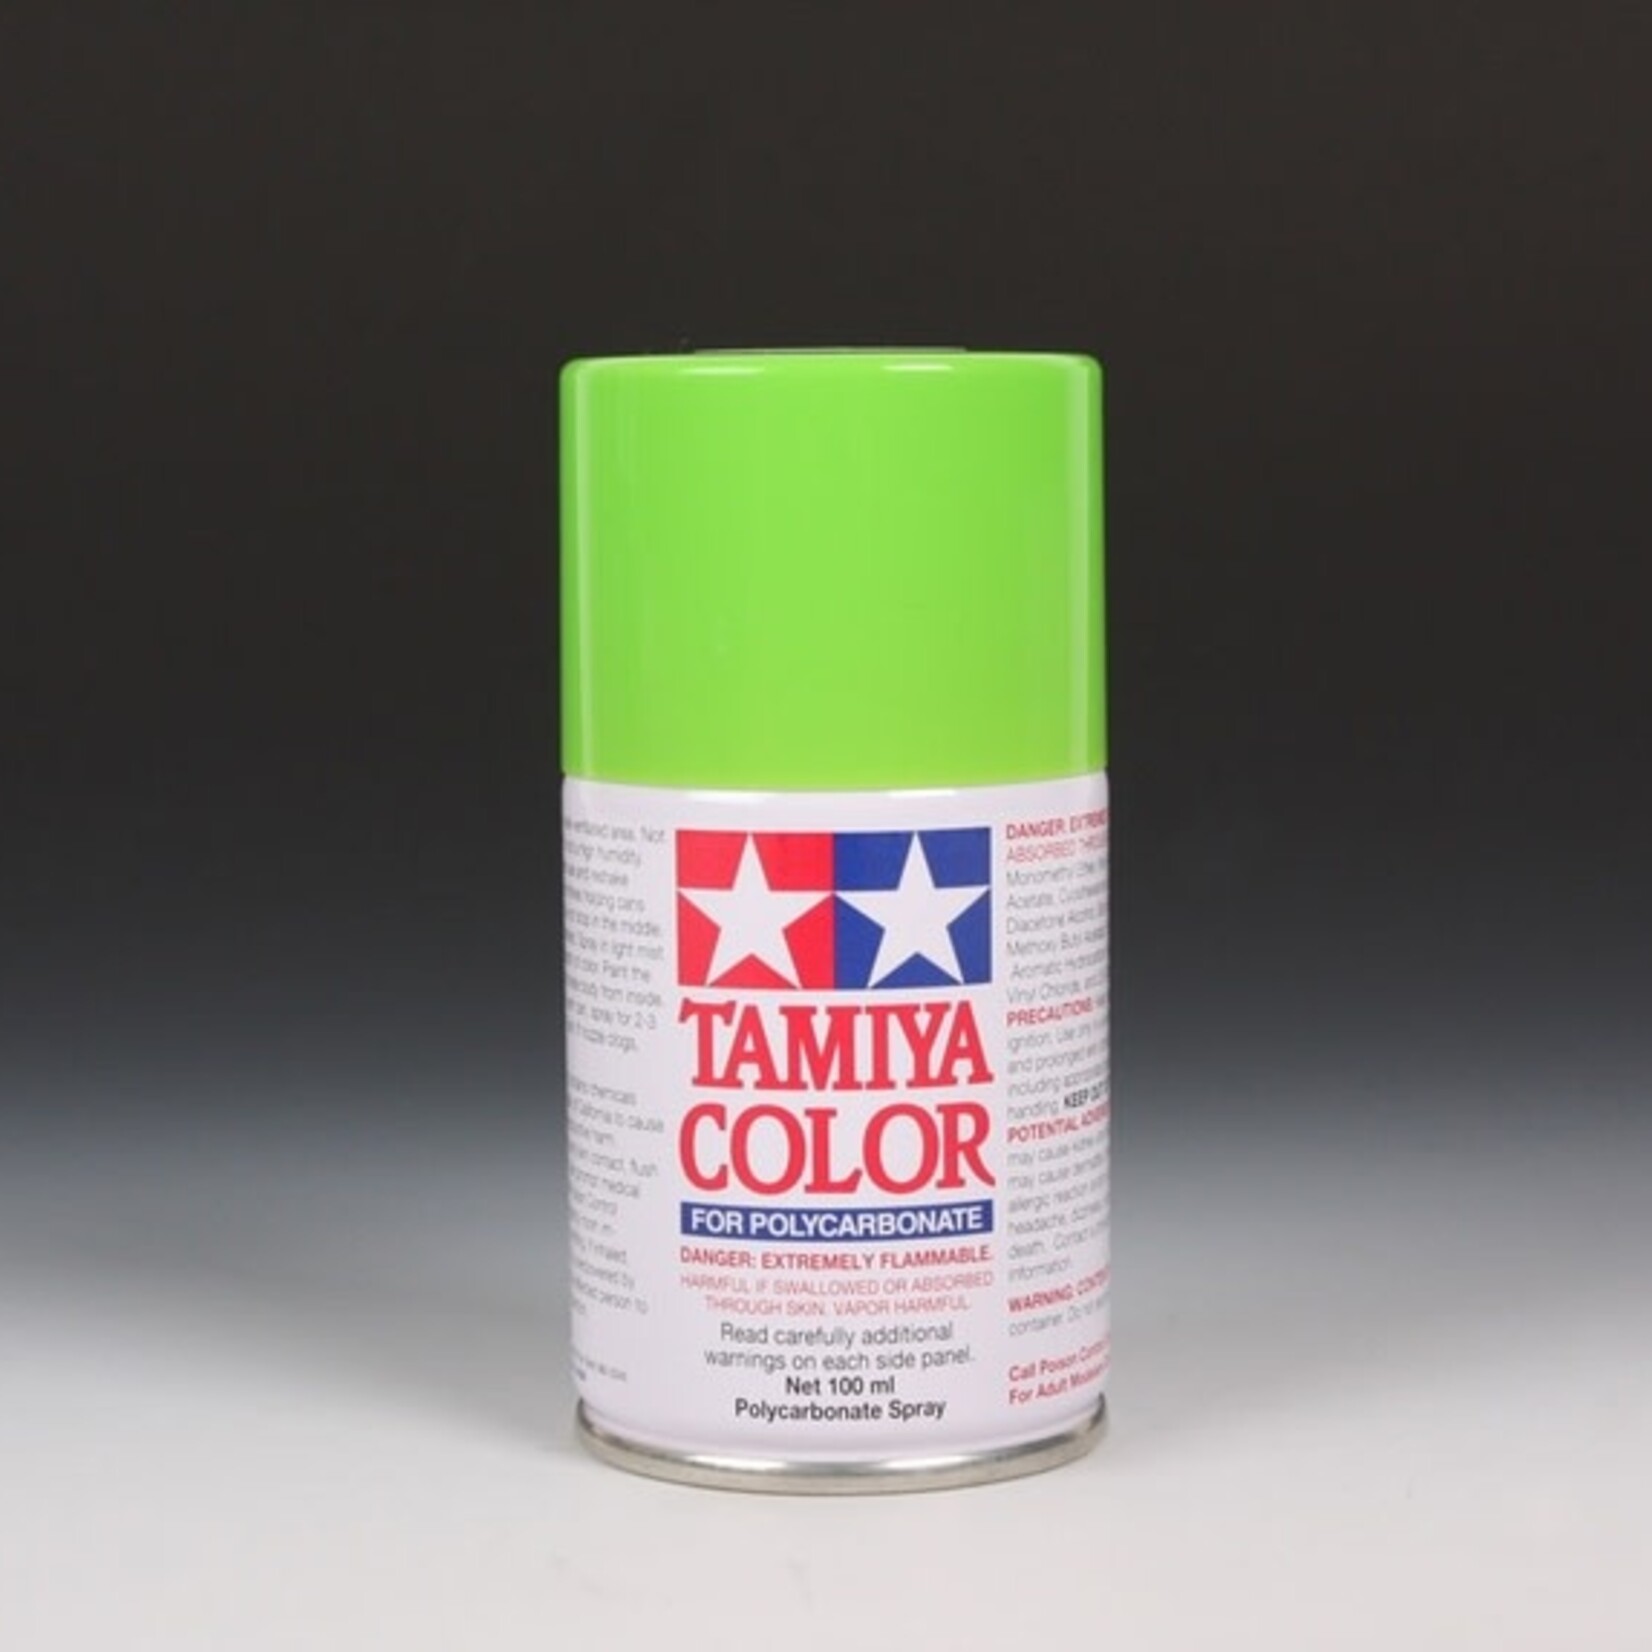 Tamiya Tamiya PS-8 LIGHT GREEN PAINT